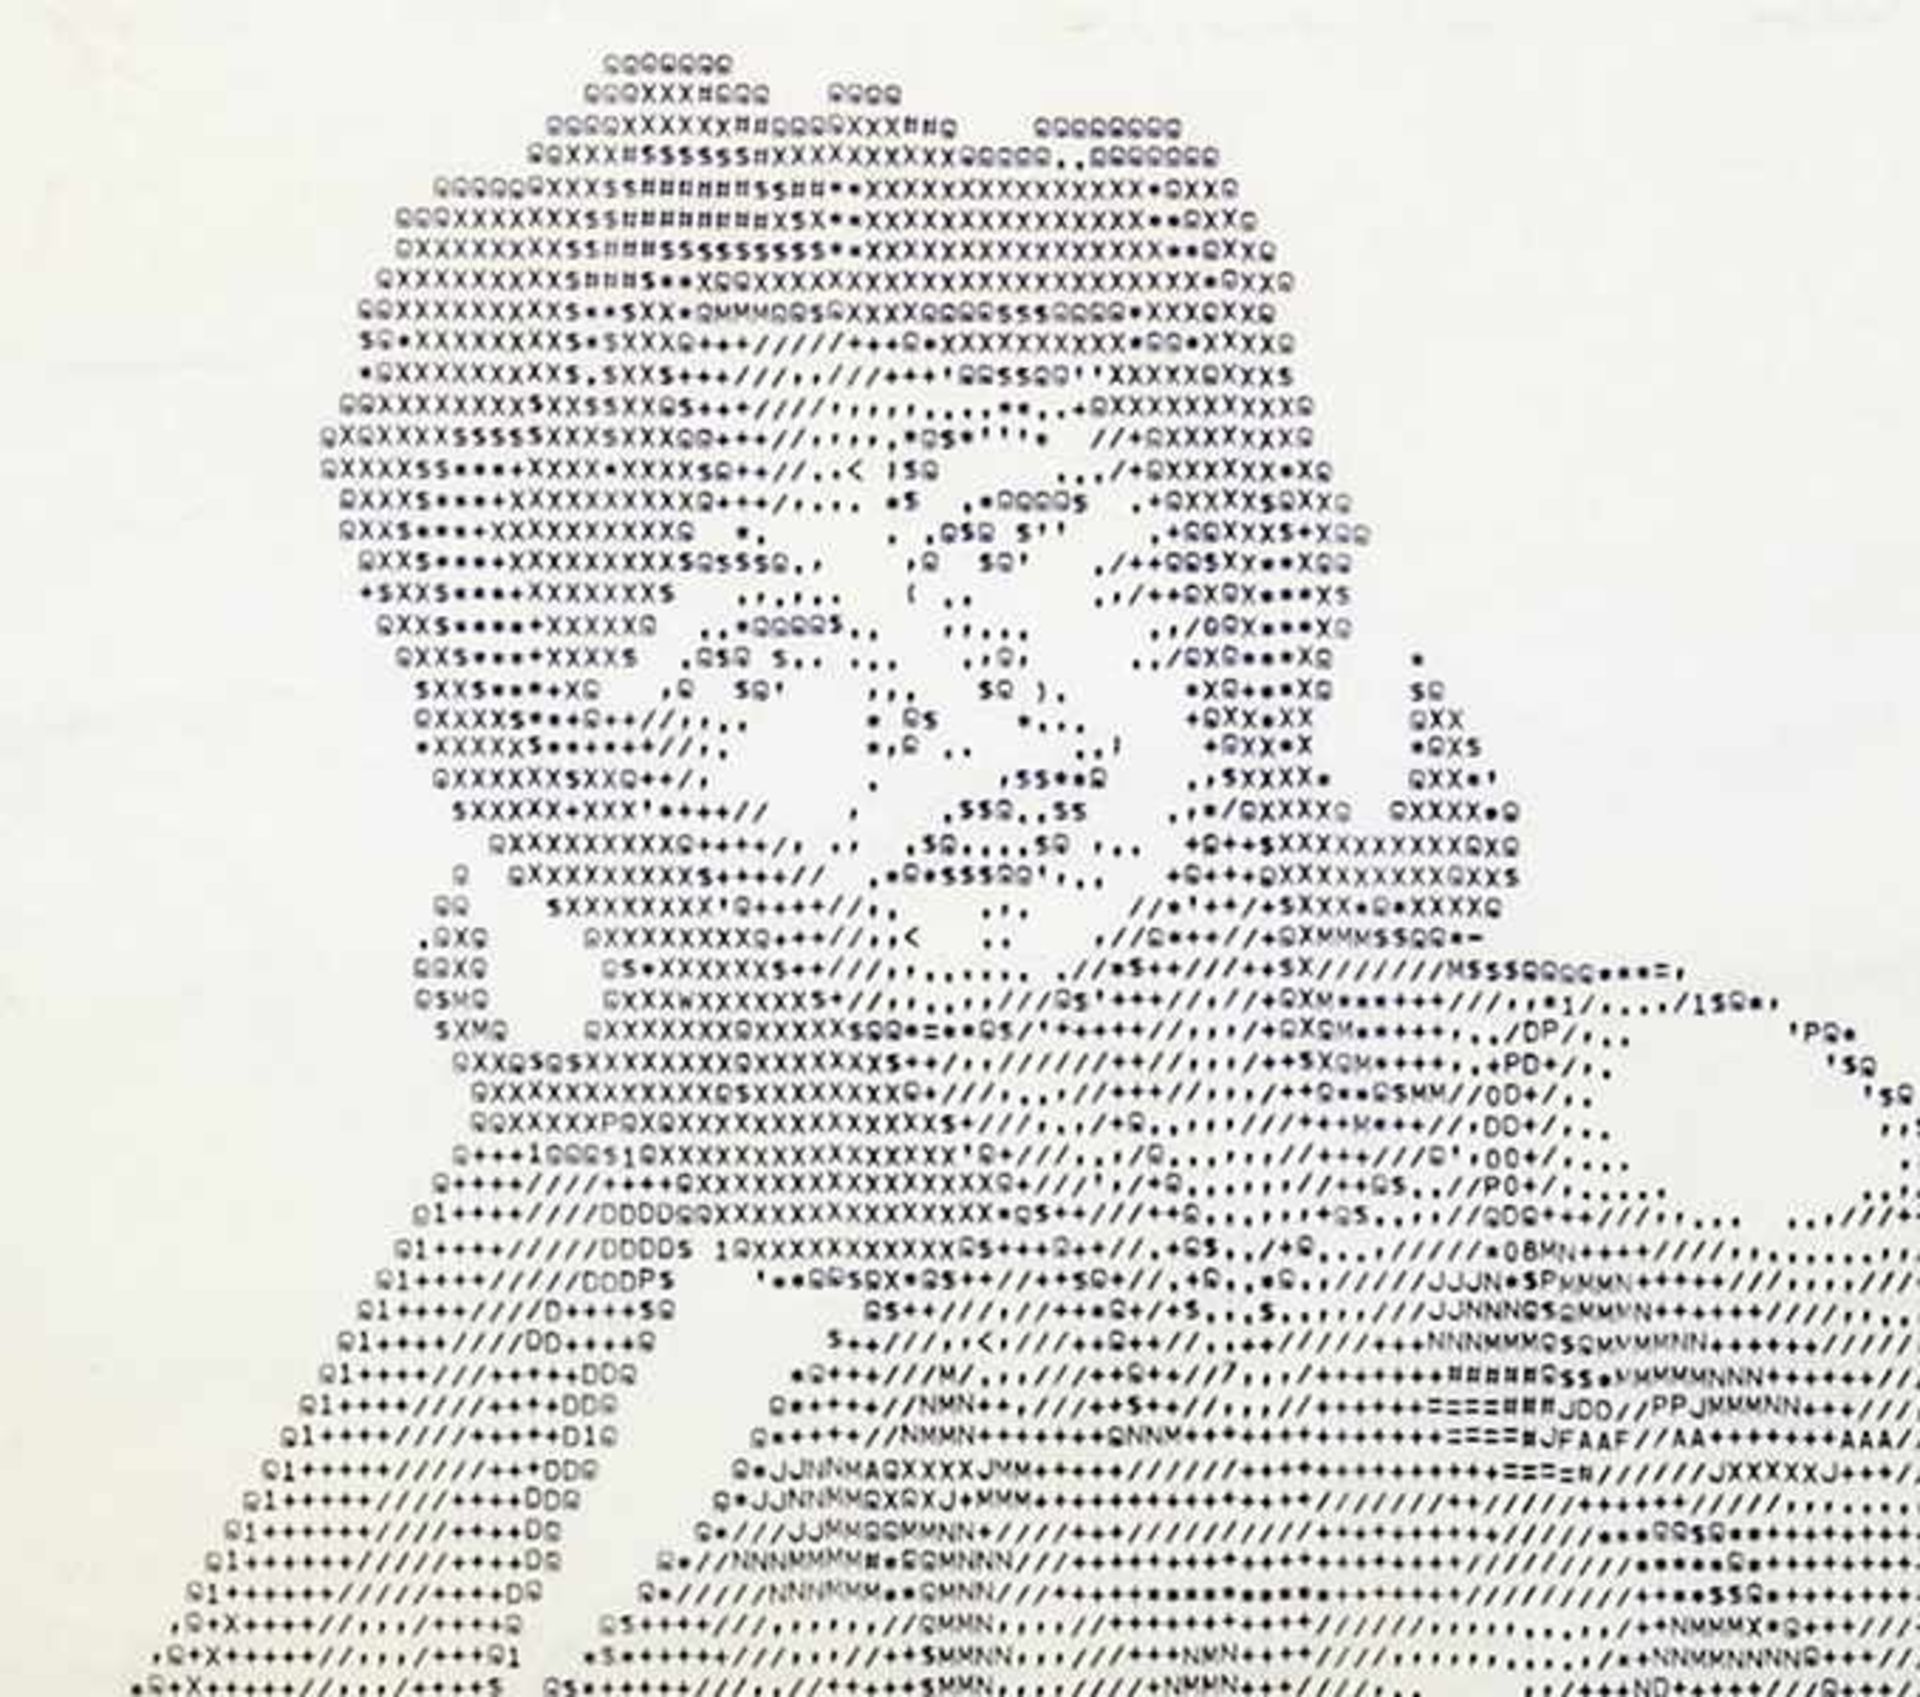 ASCII Art - - Pin-up. Nadeldrucker auf Endlospapier. In der letzten Zeile signiert mit "*ETER* - Bild 2 aus 5